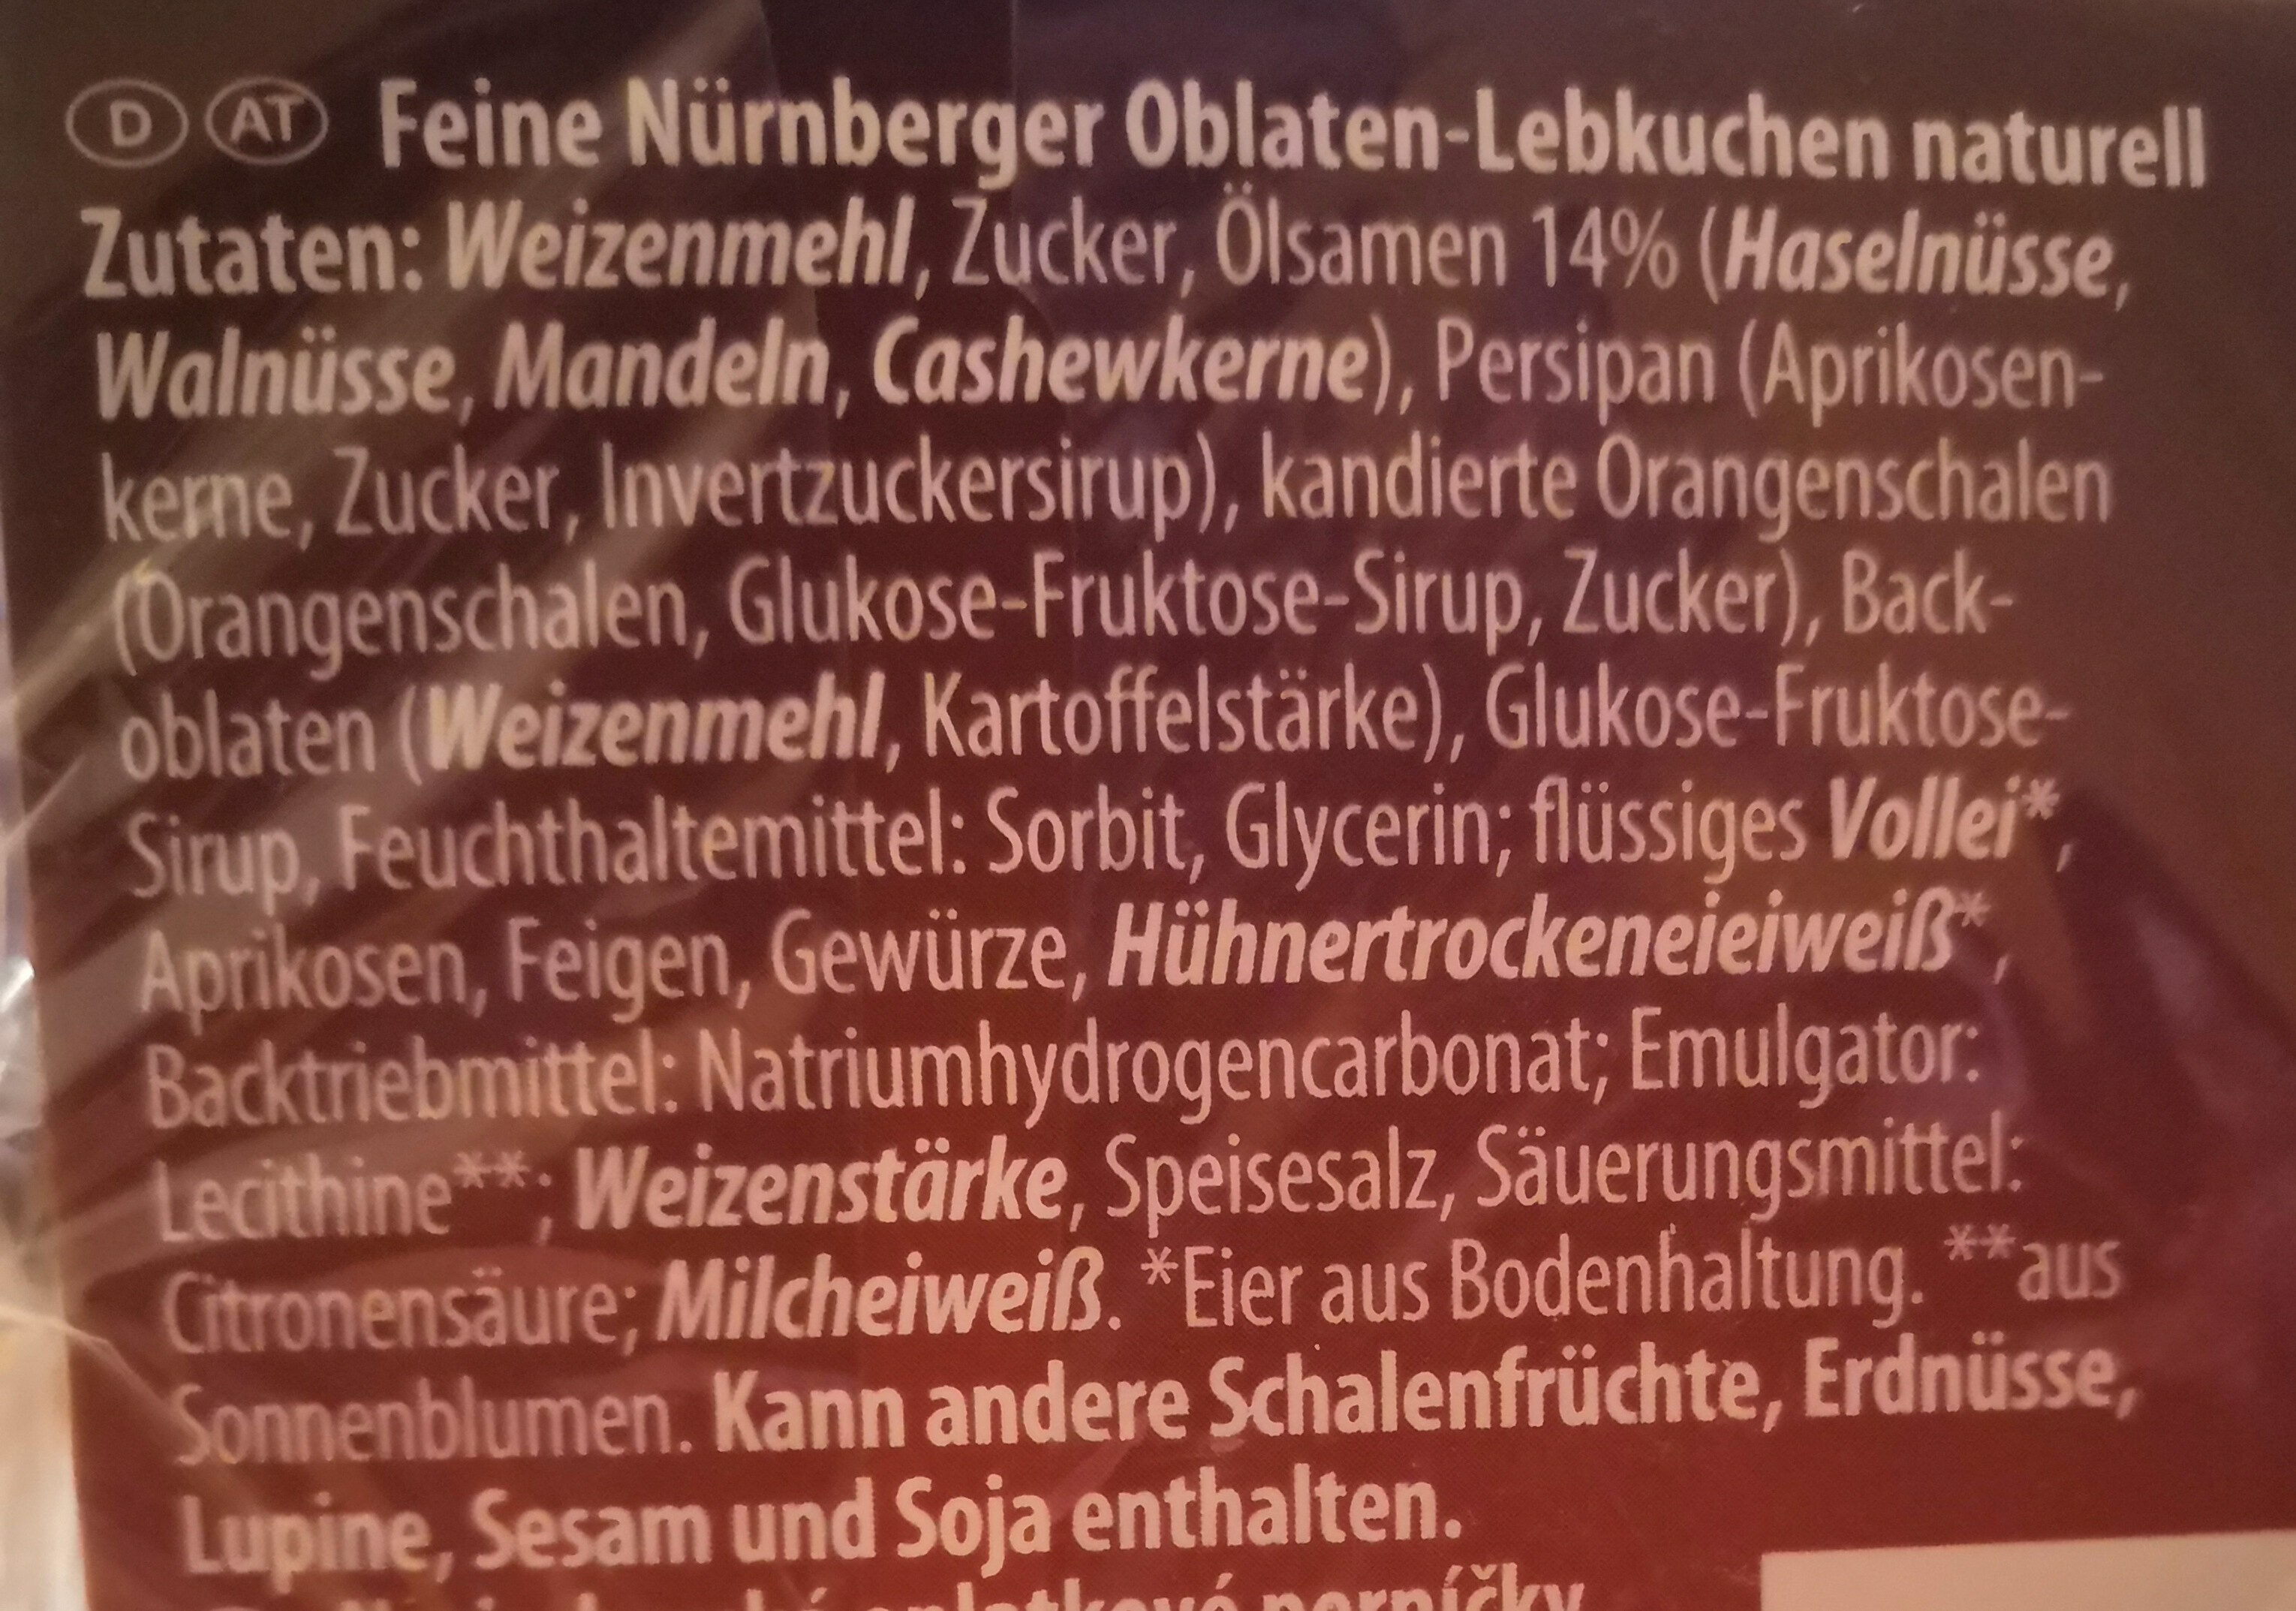 Goldora Feine Nürnberger Oblaten-Lebkuchen, natur - Ingredients - de